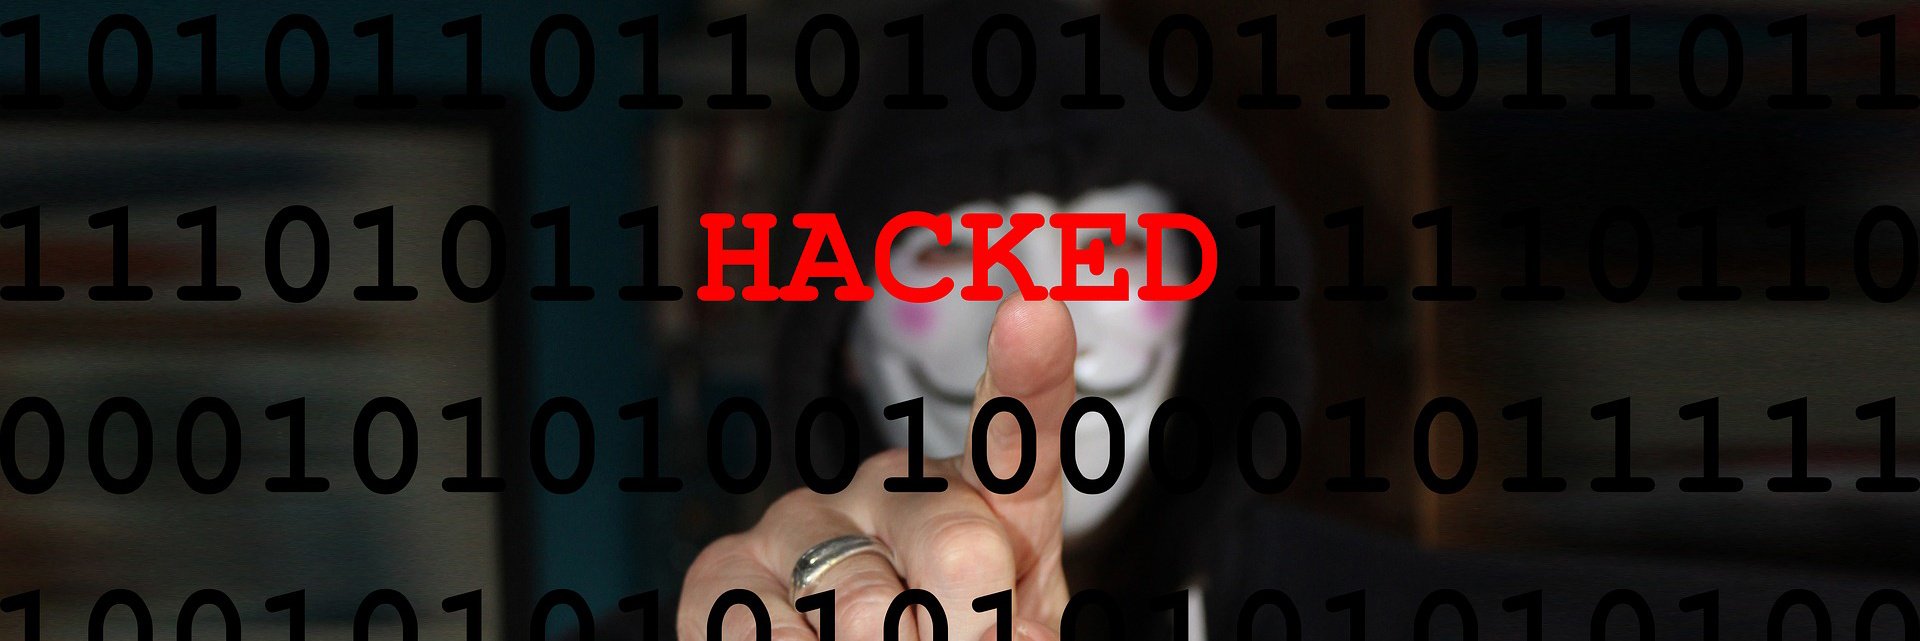 cybercrime-hacker1